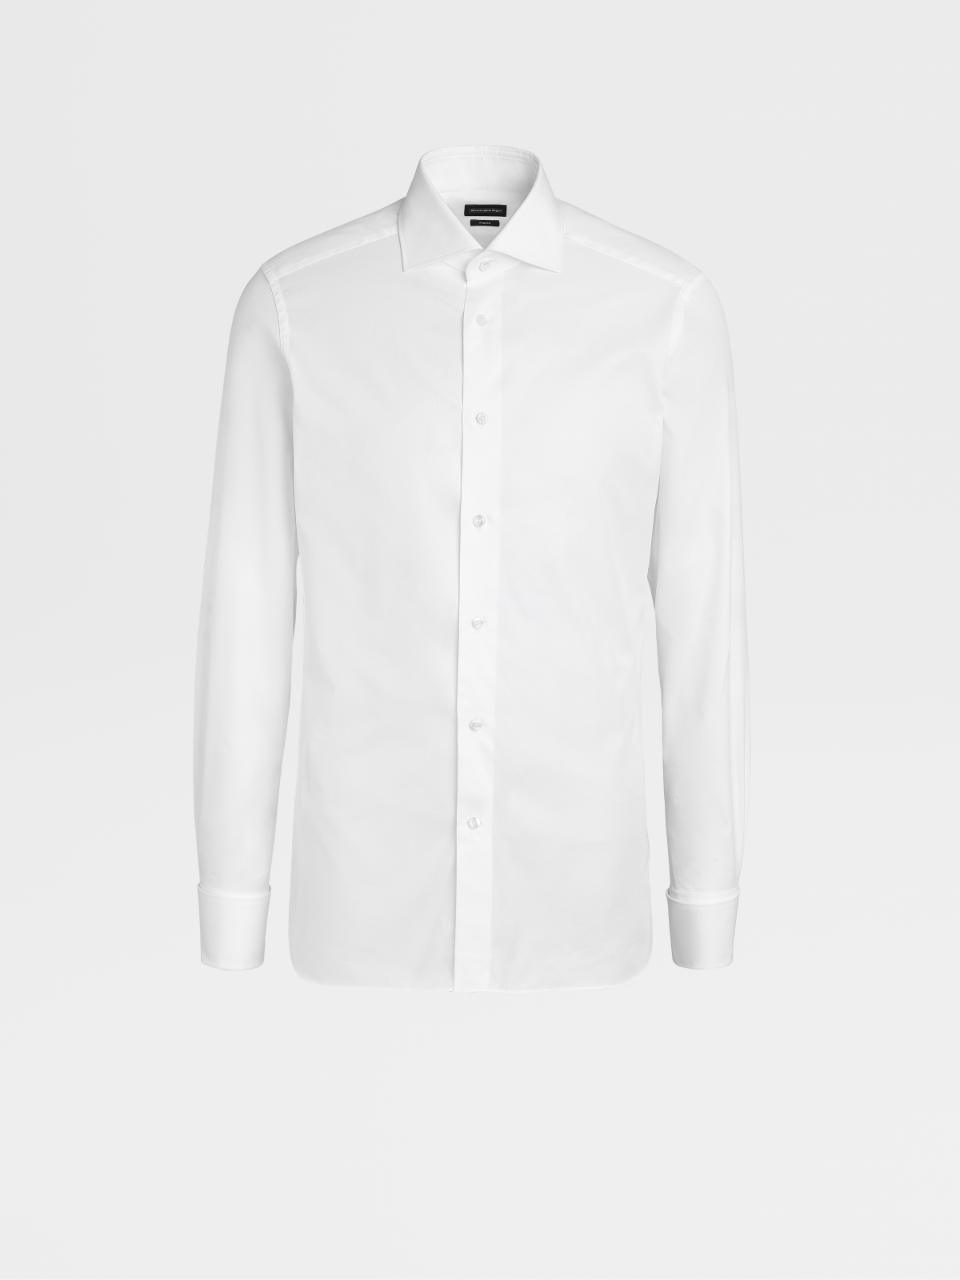 White Trofeo™ Cotton Tailoring Shirt, Milano Regular Fit